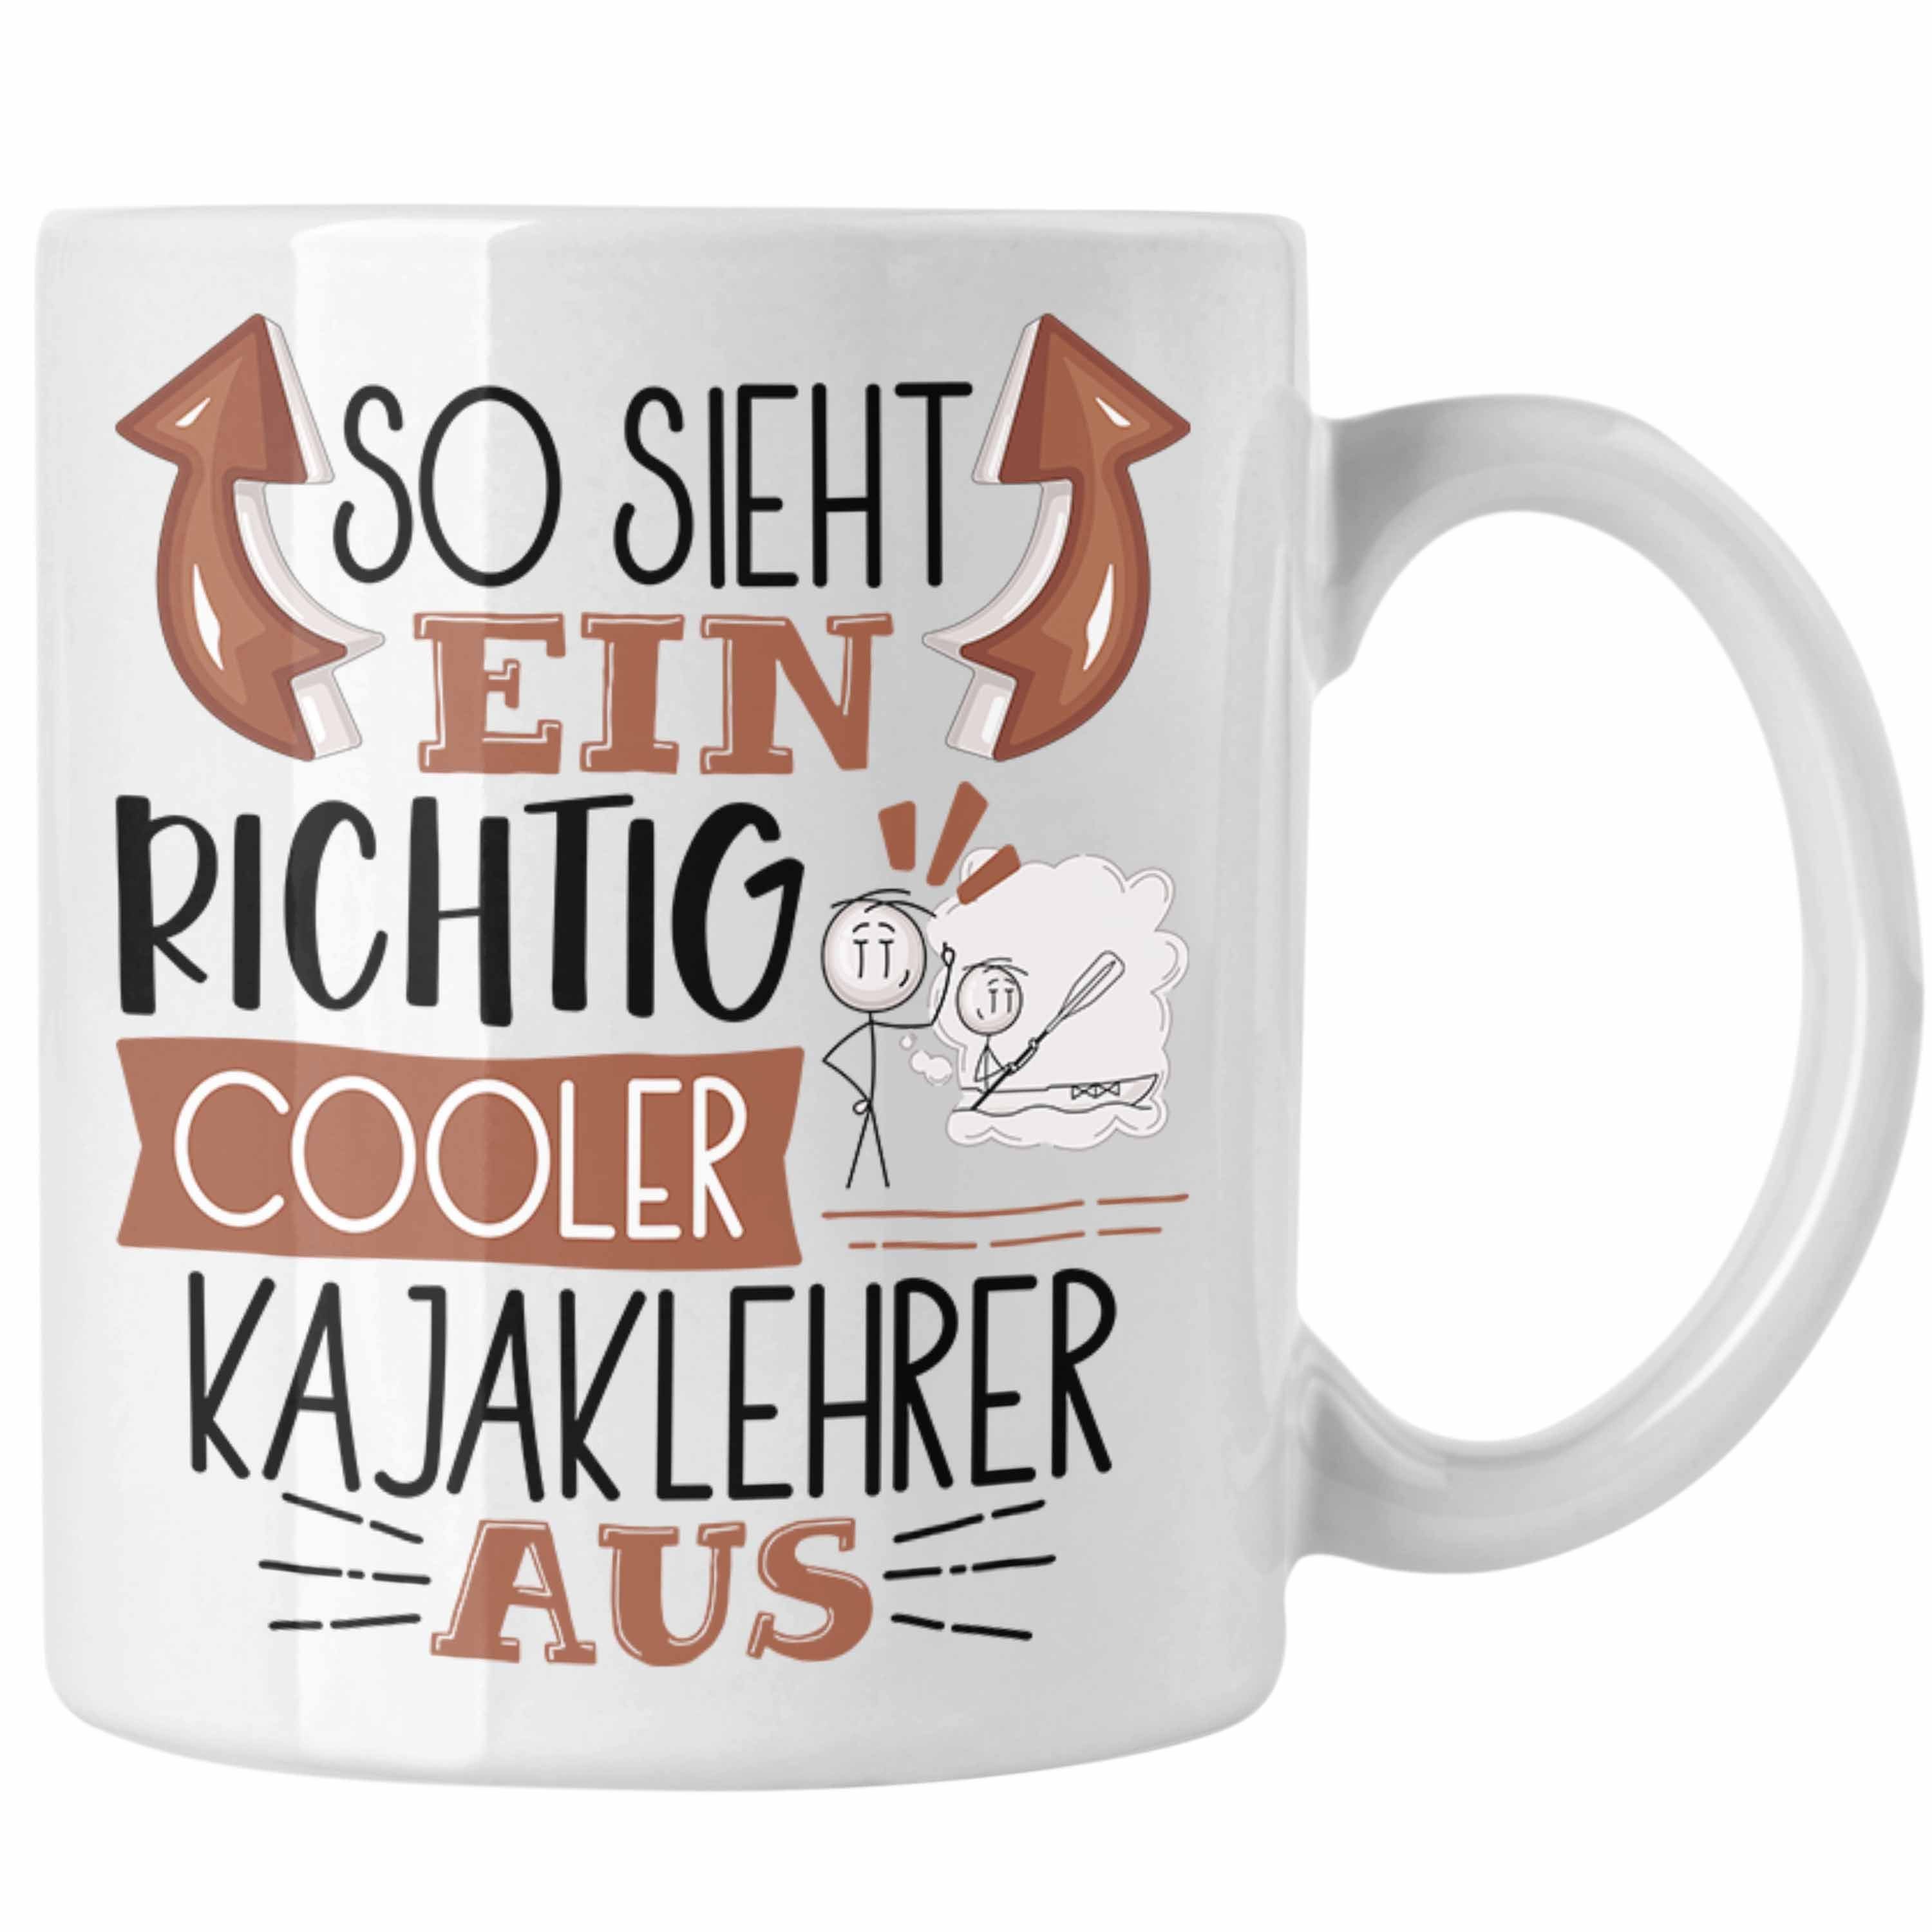 Tasse für Geschenk Aus Kajaklehrer Richtig So Kajakle Weiss Ein Sieht Cooler Tasse Trendation